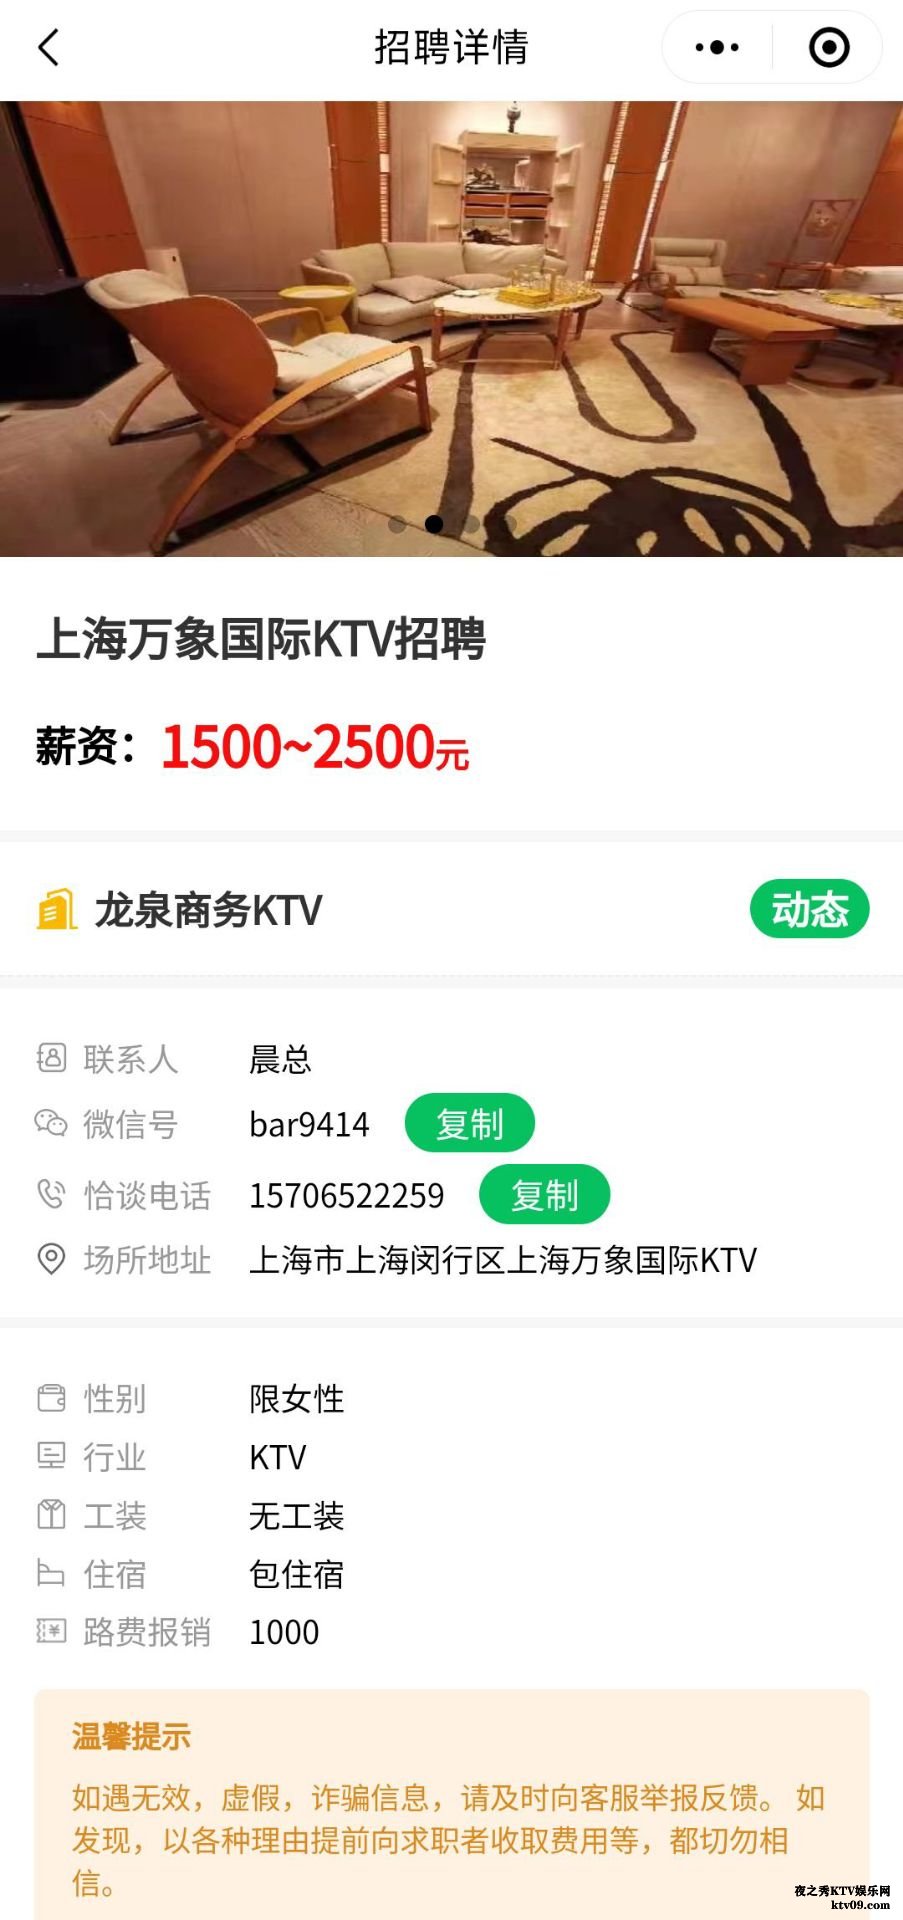 上海高端商务KTV招聘女孩